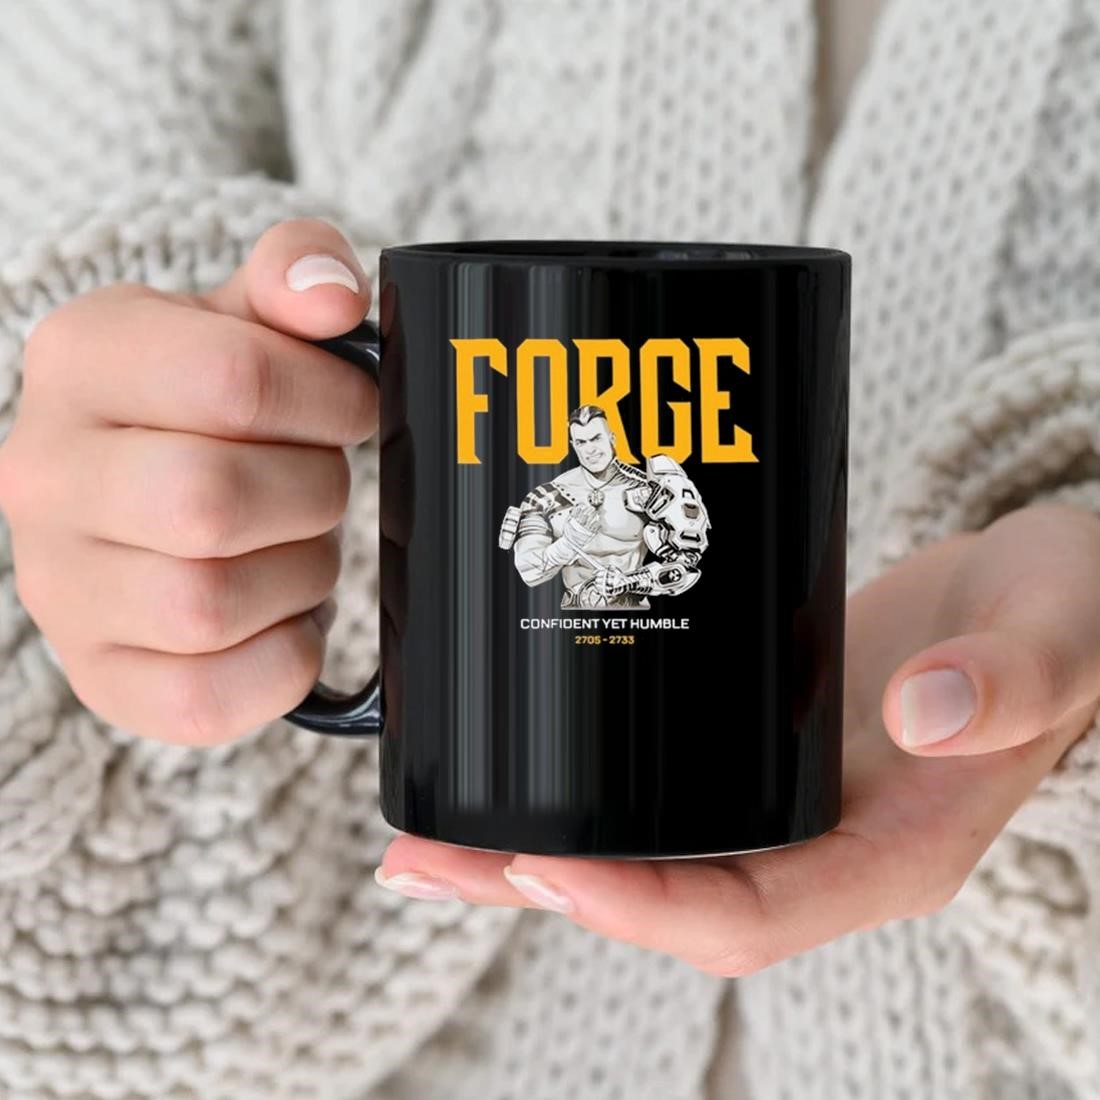 New Apex Legends Forge Mug